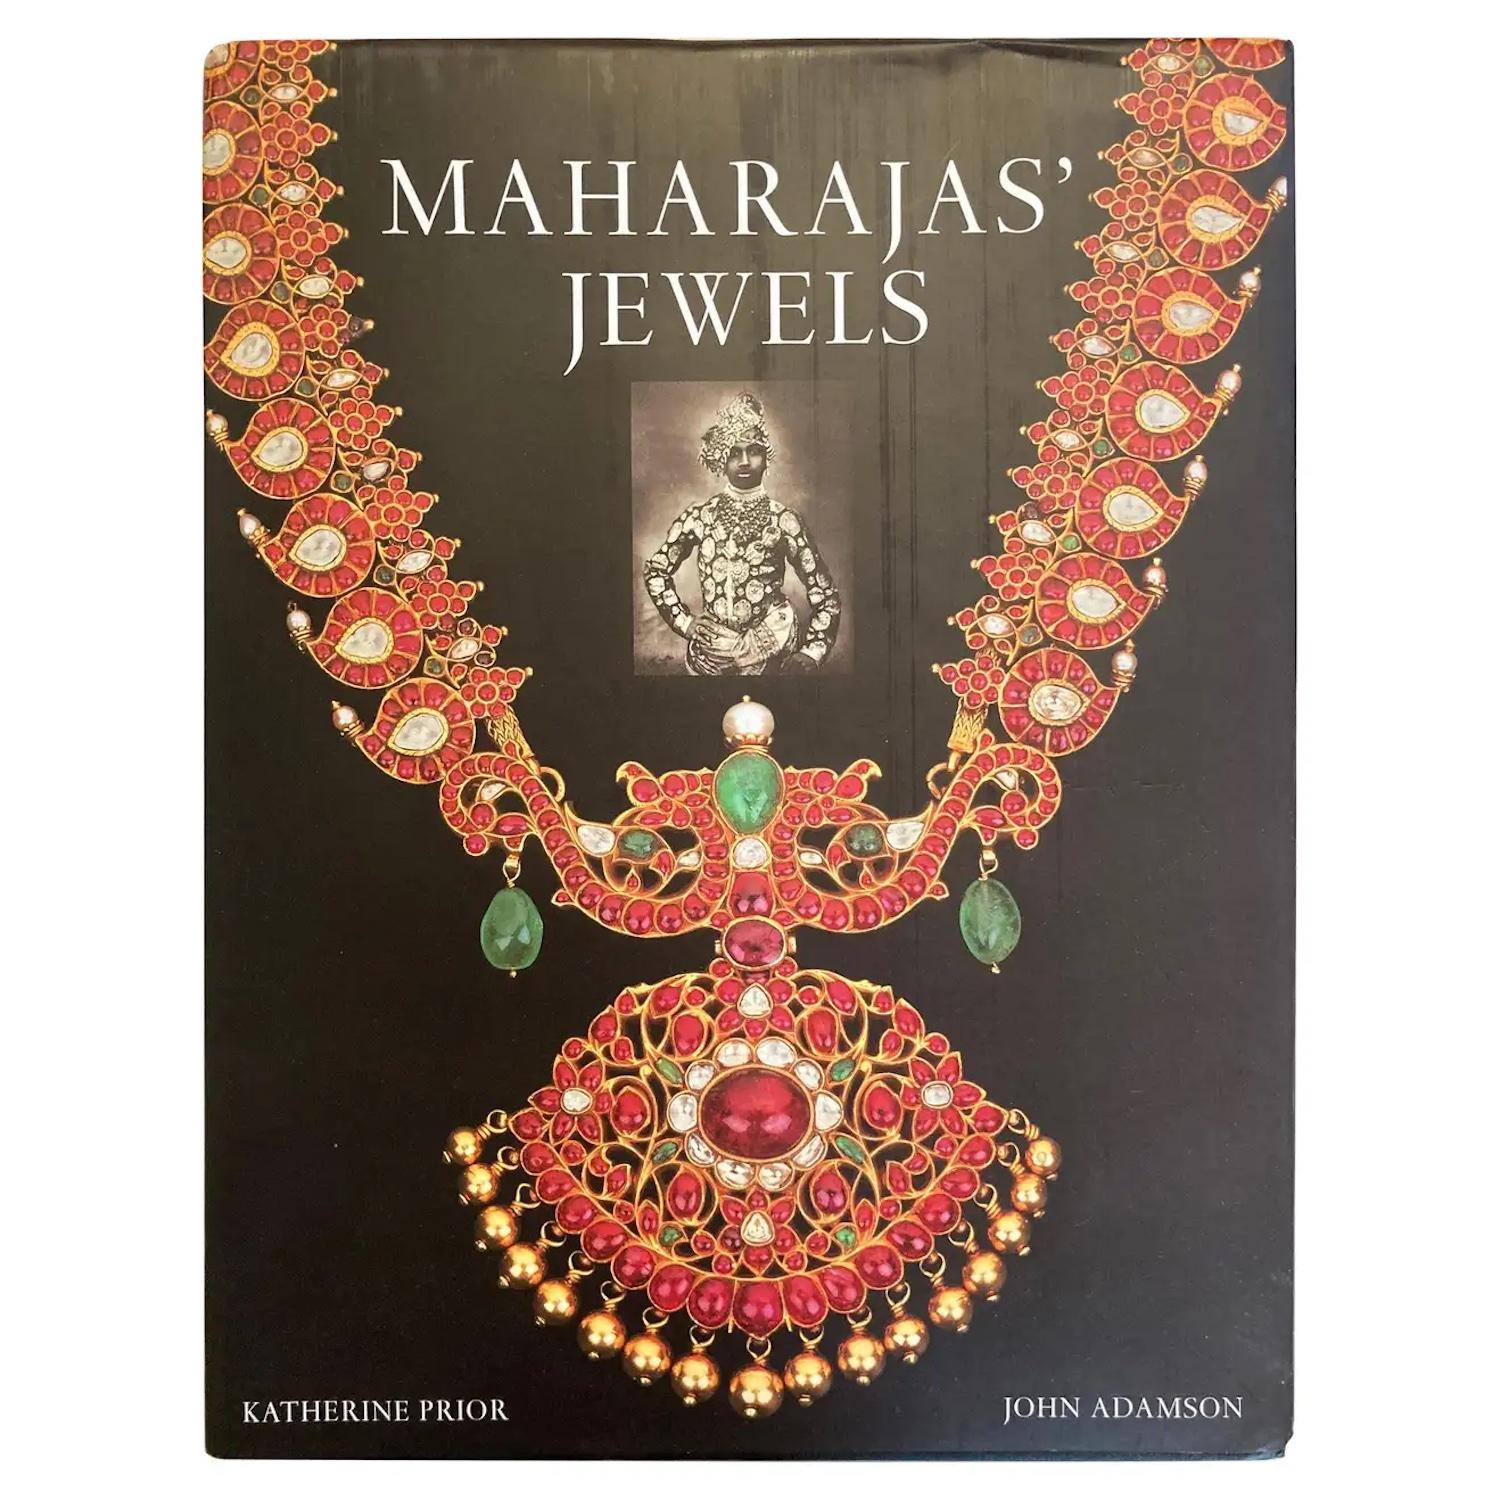 Maharaja's Jewels Table Book von Katherine Prior, Assouline.
Die Geschichten indischer Prinzen und ihrer Juwelen und Edelsteine werden in dieser illustrierten Erzählung zusammengeführt, die den Aufstieg und Fall der führenden indischen Königshäuser